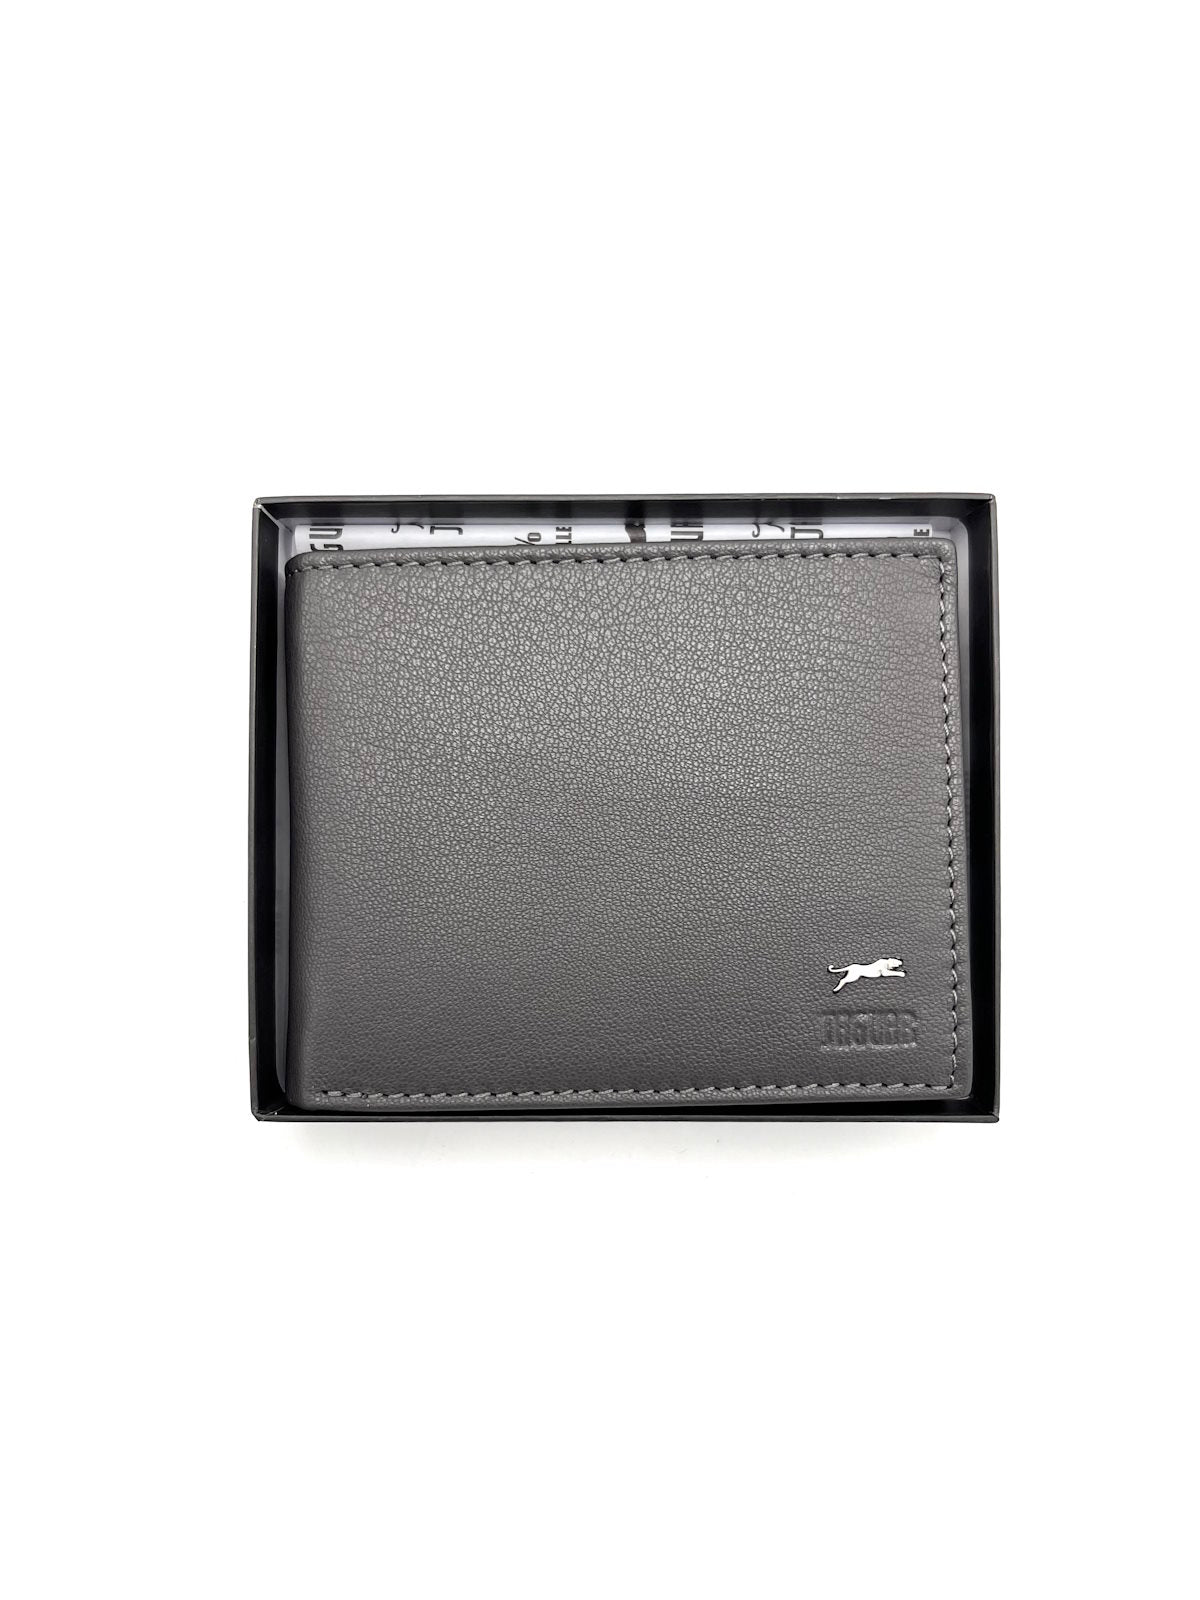 Genuine leather wallet, Jaguar, for men, art. PF701-9